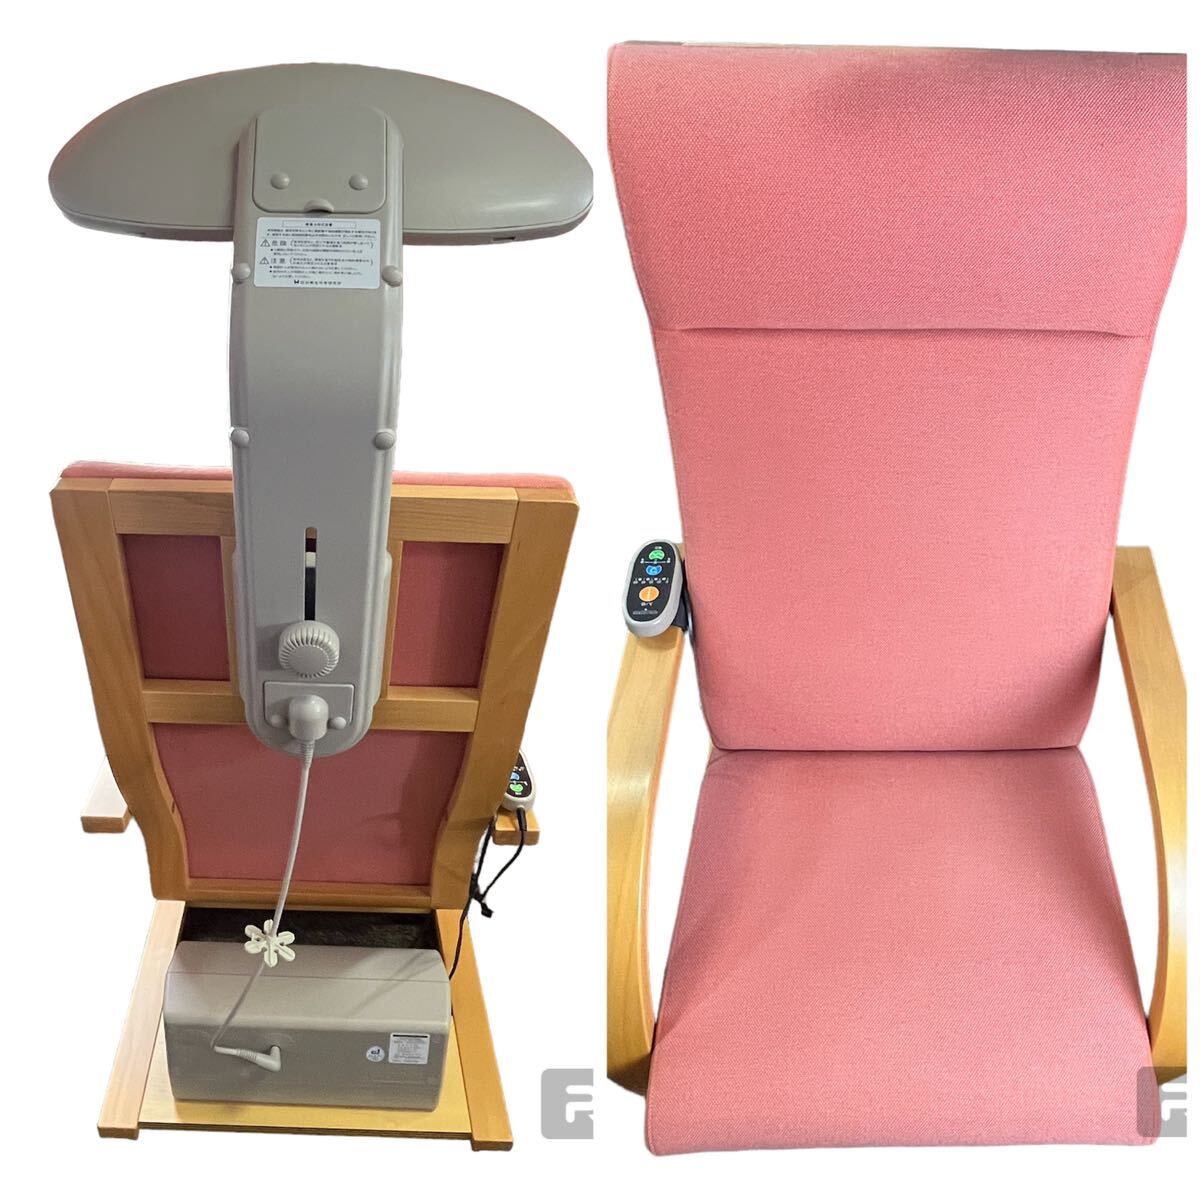 白寿生科学研究所 ヘルストロン HEF-Hc9000T 電位治療器 ピンク 動作確認済み 椅子タイプ 家庭用電位治療器 の画像4